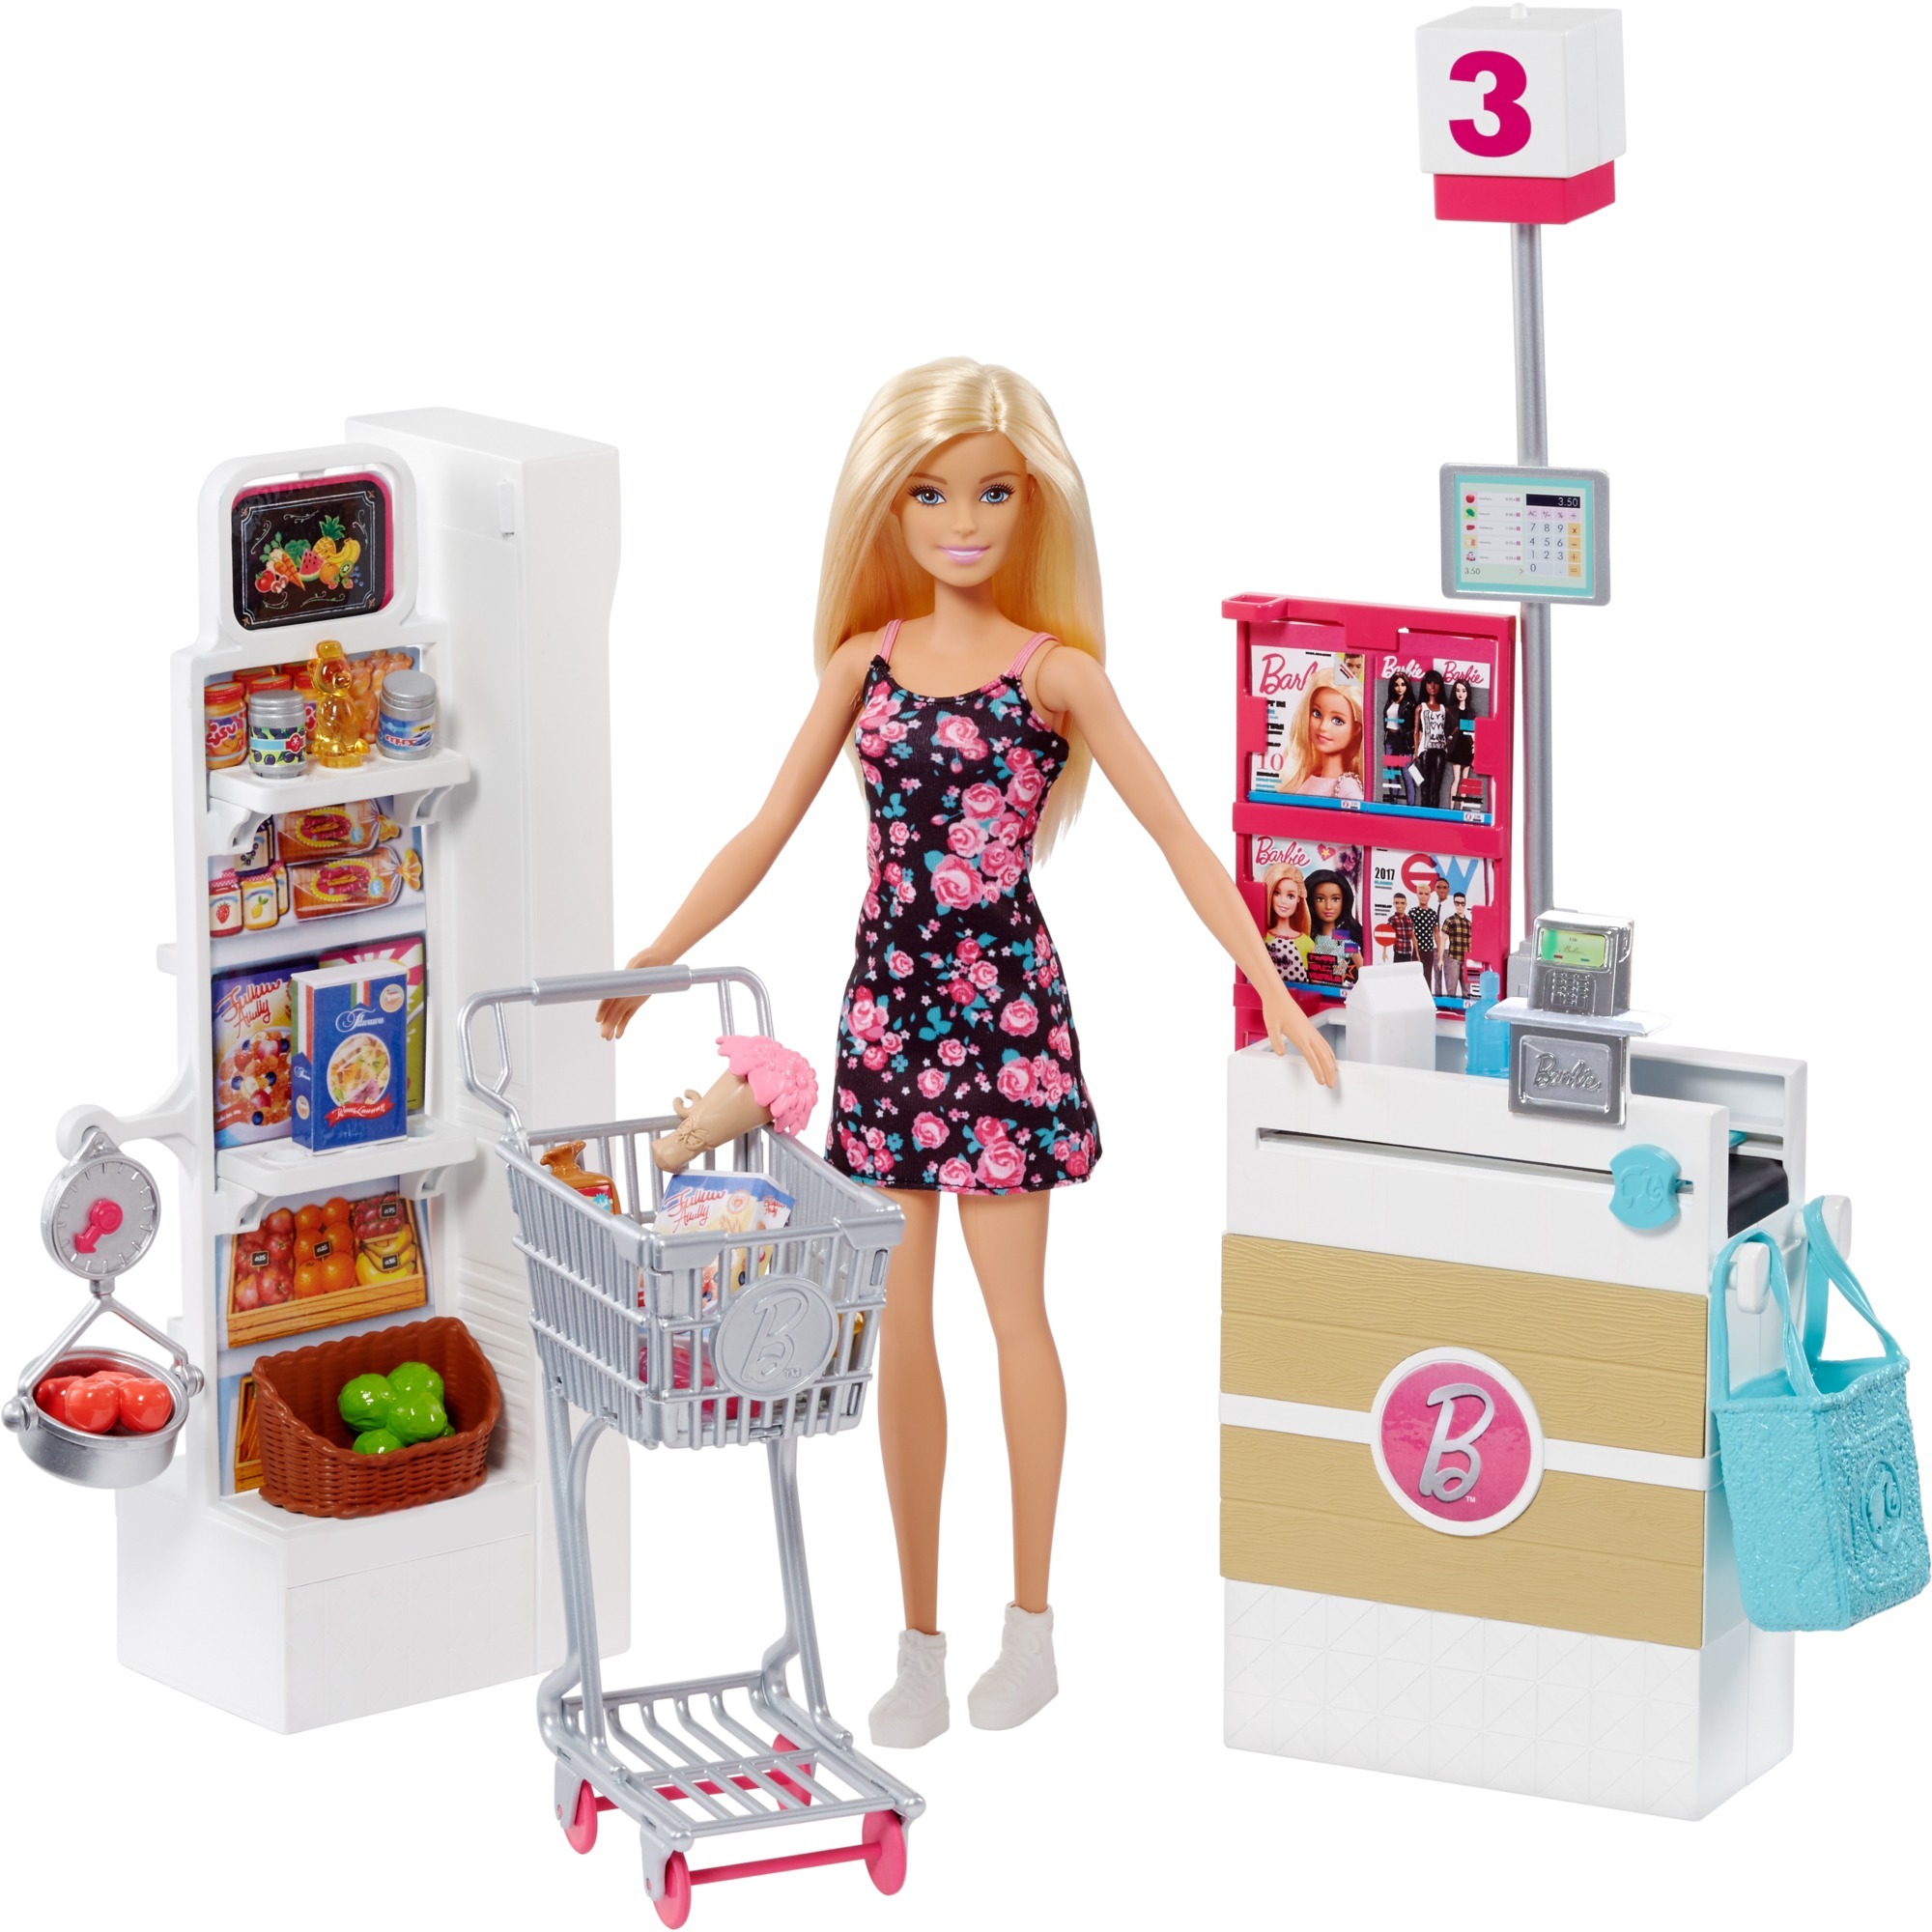 Игрушки для девушек купить. Mattel Barbie frp01 Барби супермаркет в ассортименте. Набор Barbie в супермаркете, 28 см, frp01. Игровой набор Mattel "Barbie новый дом мечты". Игровой набор Barbie frp01.